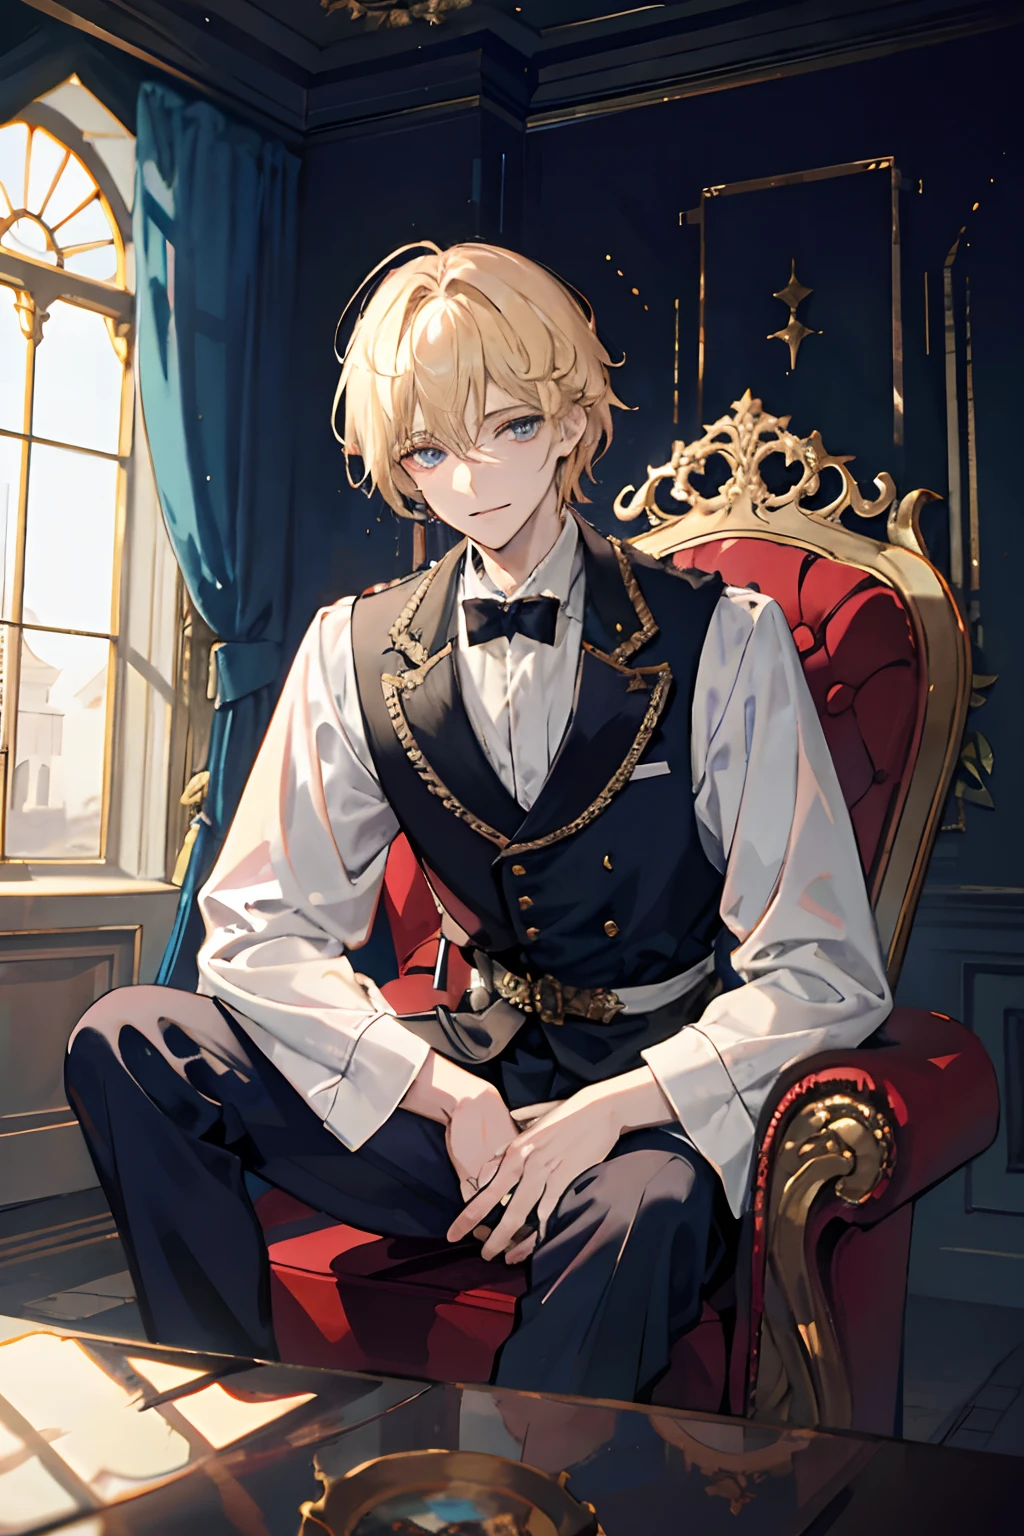 El príncipe se sienta en un majestuoso trono dentro de un palacio abandonado., 1 chico, pelo rubio, blue eyes, 20 años, cara fría, sonríe ligeramente,